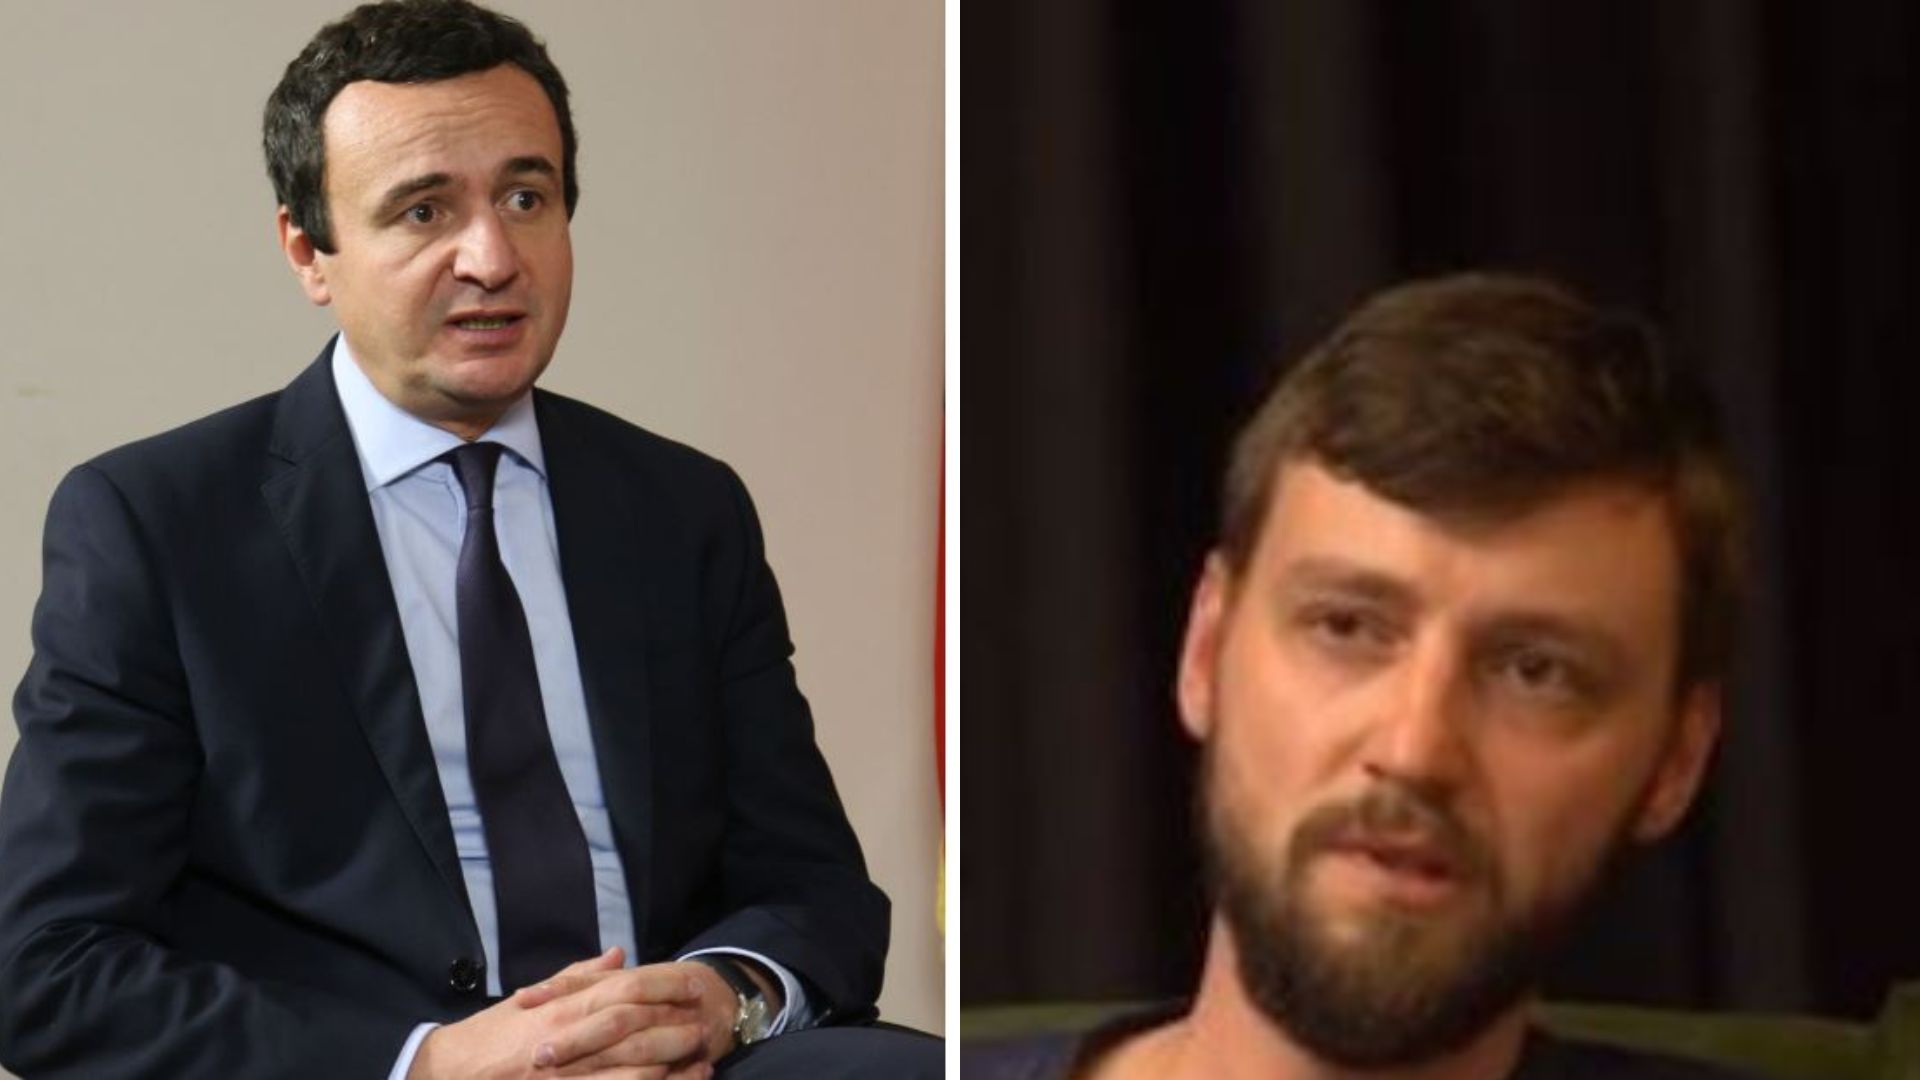 “100% e përkrahu Albin Kurtin”: Flet serbi që mbështet kryeministrin për situatën në veri